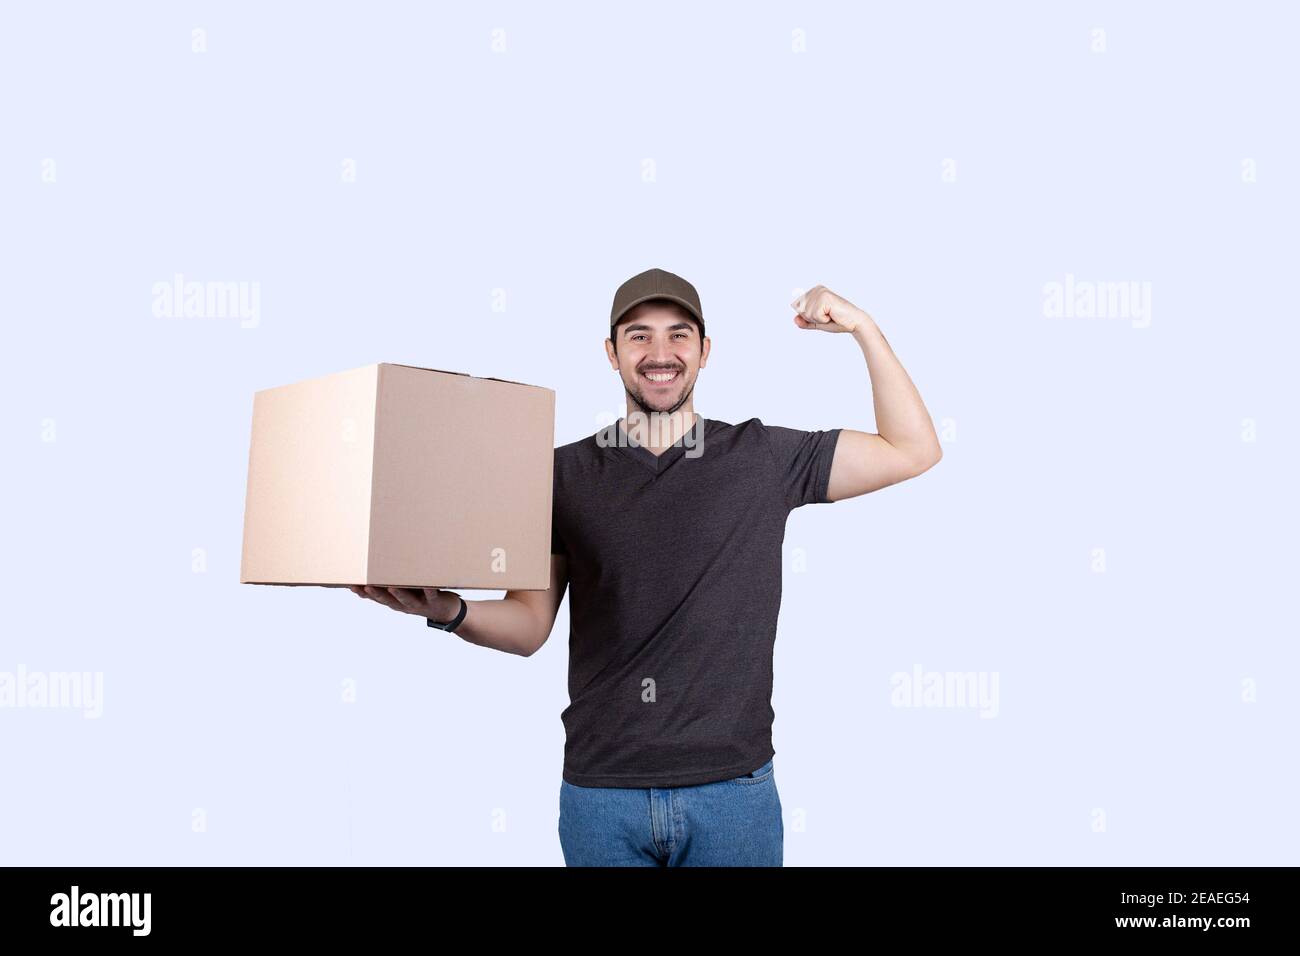 Happy Delivery Mann hält eine Box-Paket und felxing eine Hand Bizeps vorstellen Superpower. Selbstbewusster Kurierarbeiter . Persönliche Entwicklung, Kraft und m Stockfoto